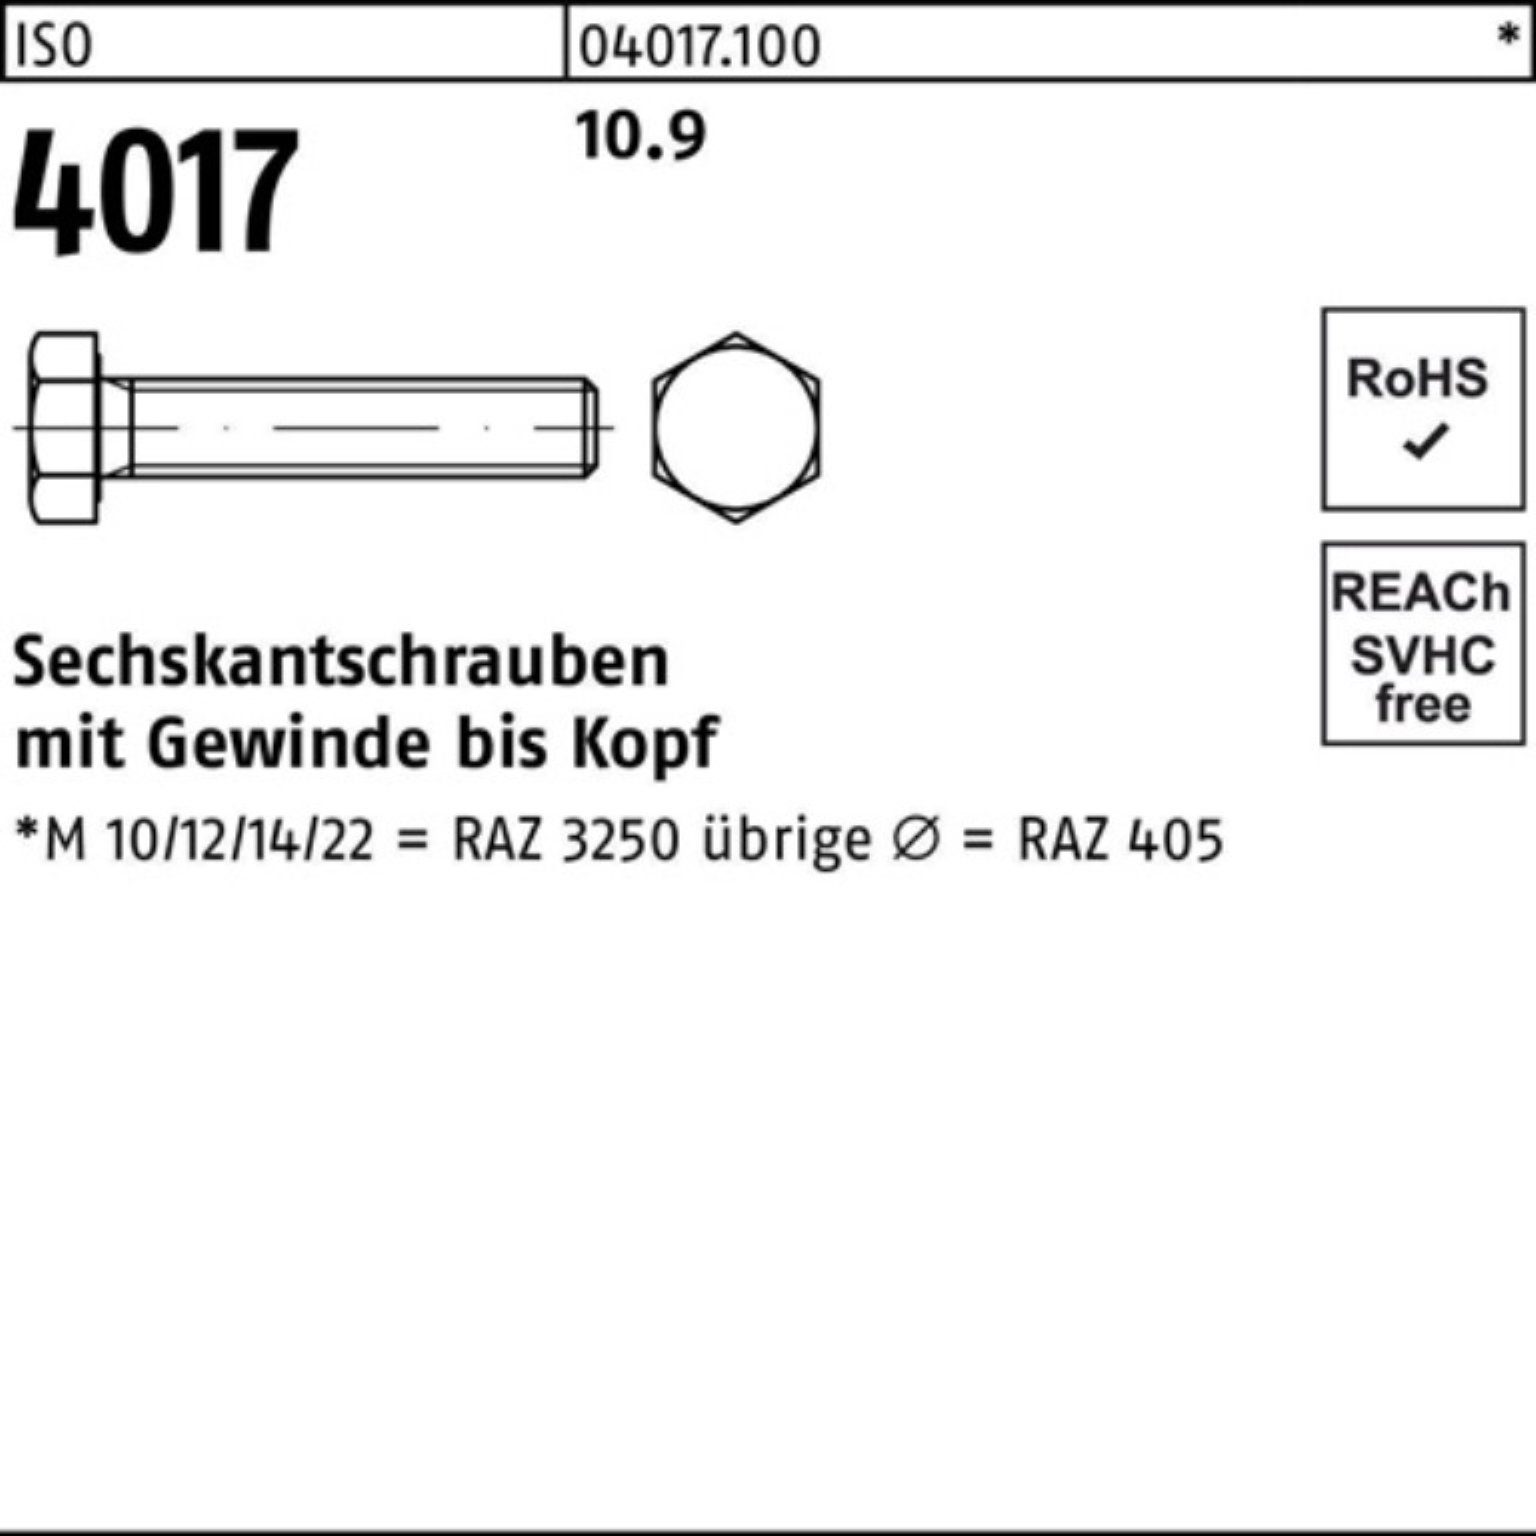 Bufab Sechskantschraube 40 M36x VG Pack 180 10.9 Sechskantschraube 1 4017 Stück ISO 100er ISO